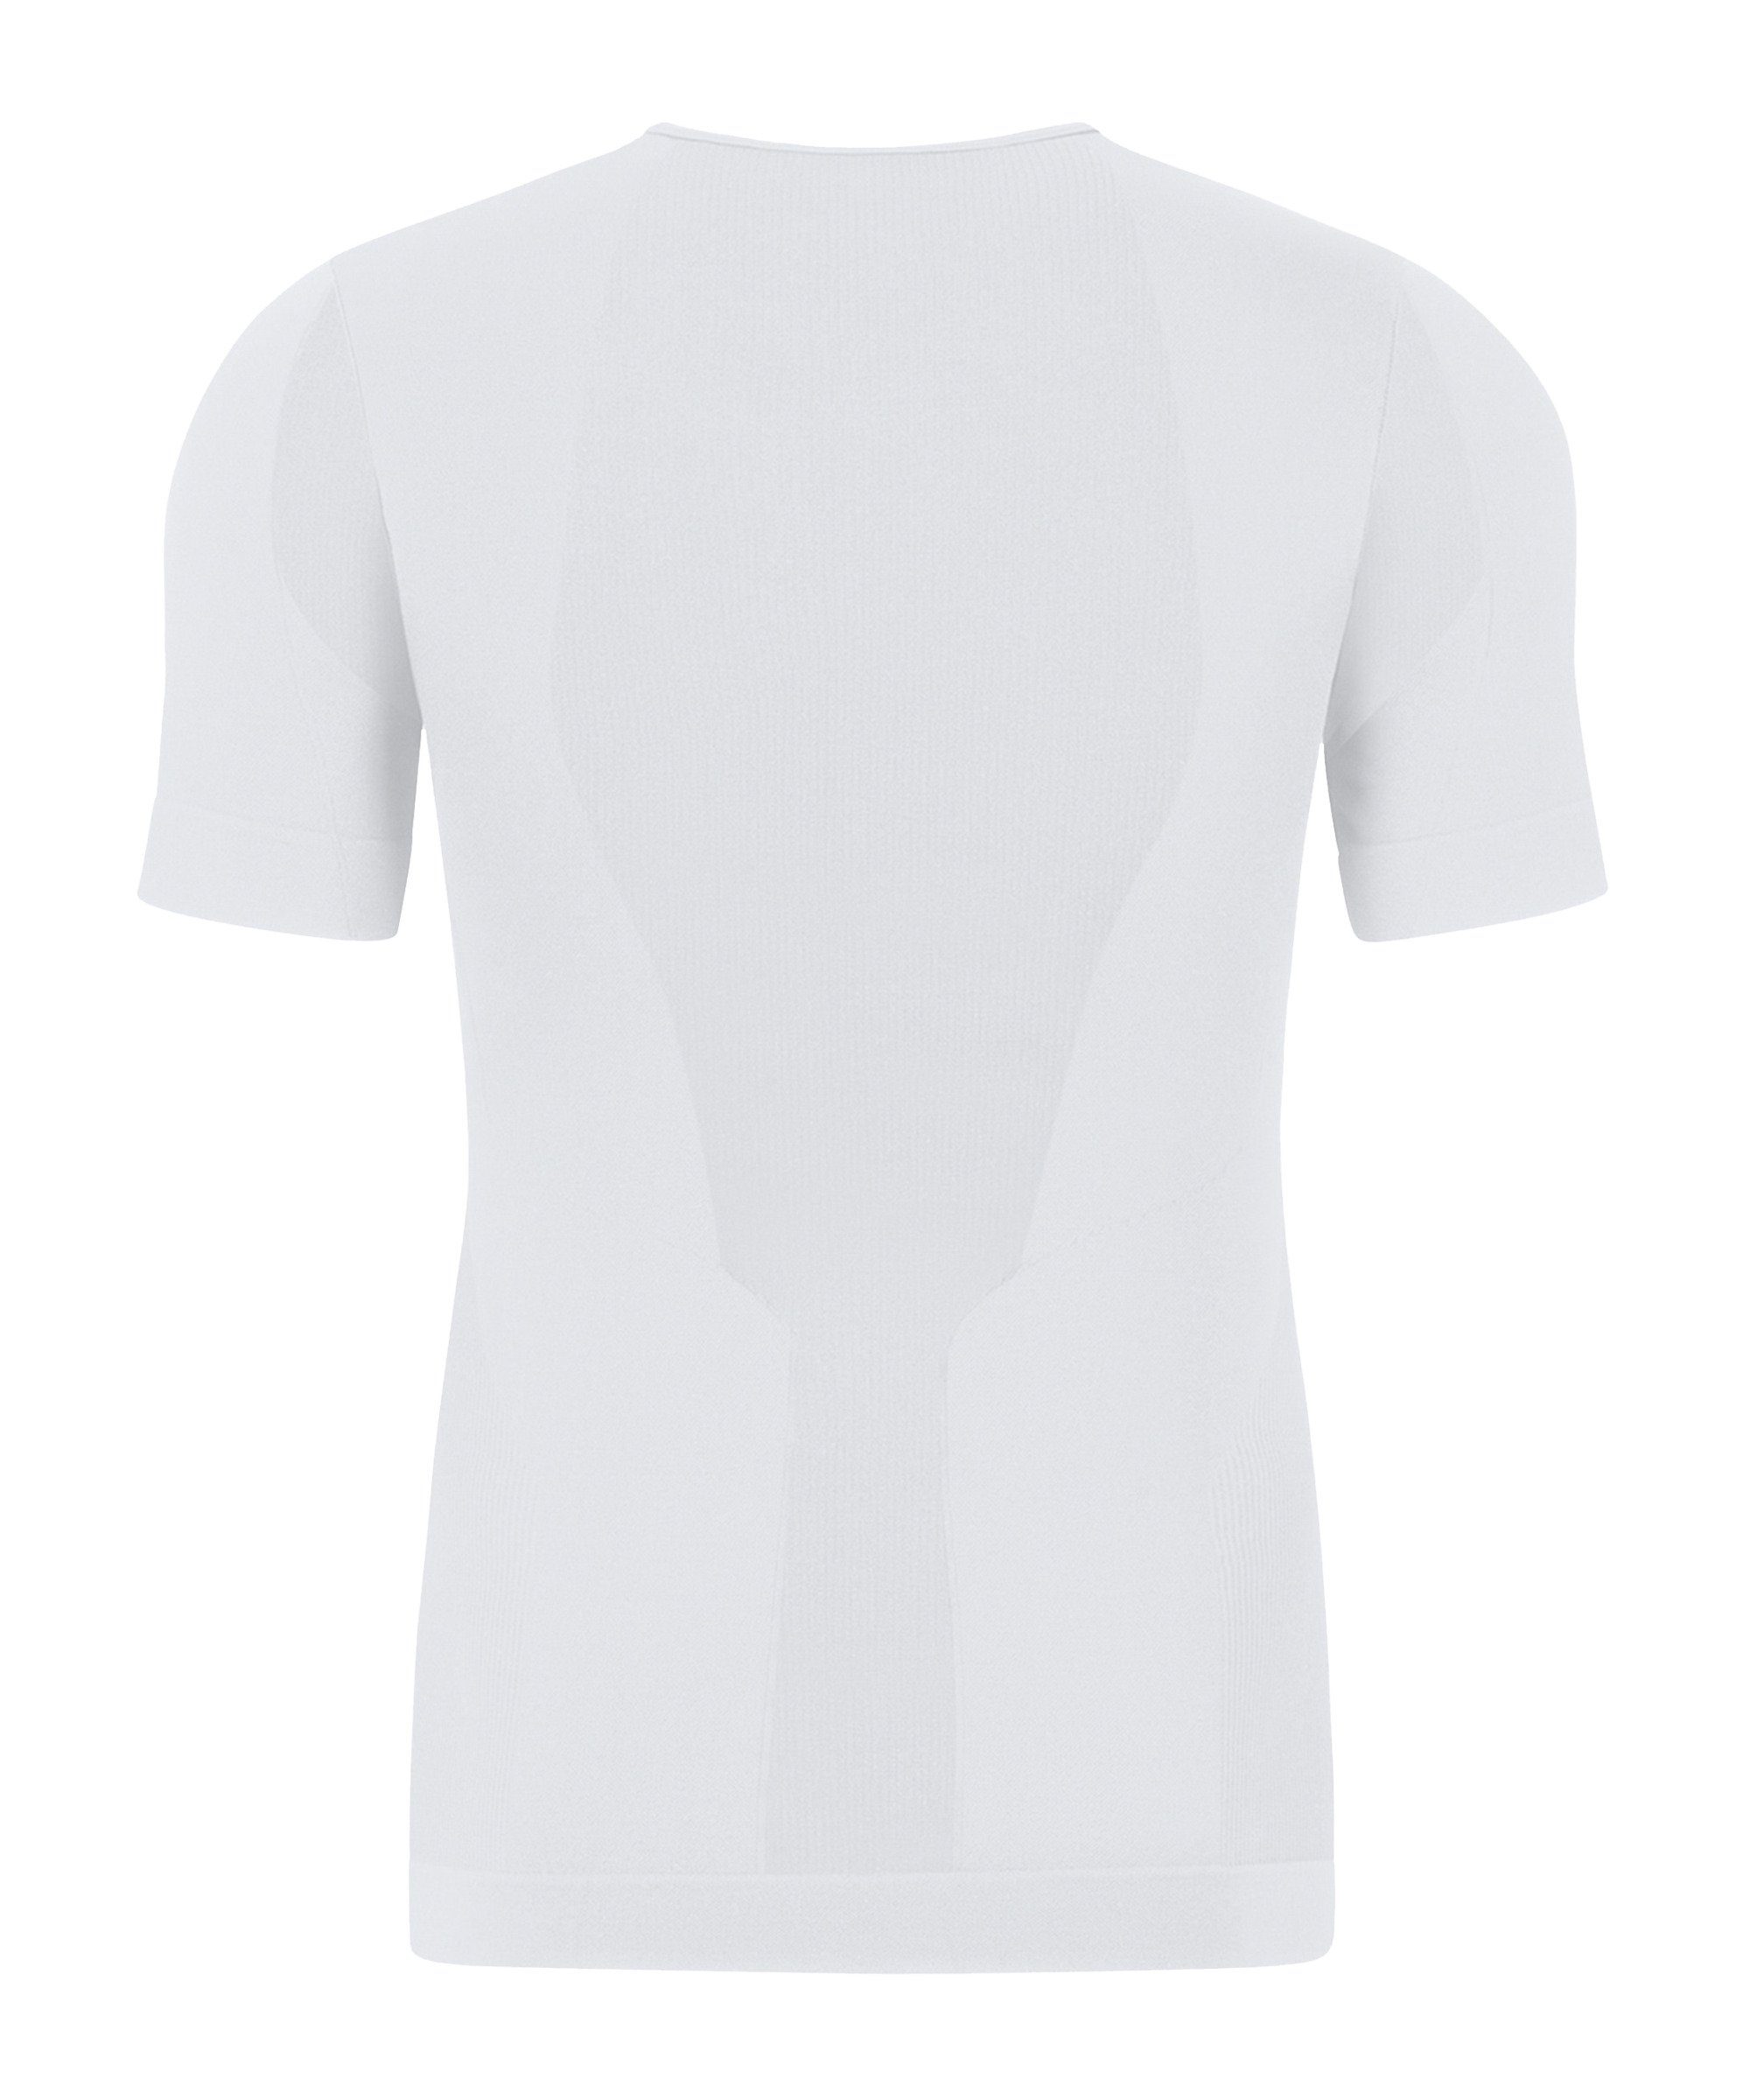 Jako T-Shirt weiss 2.0 default T-Shirt Skinbalance